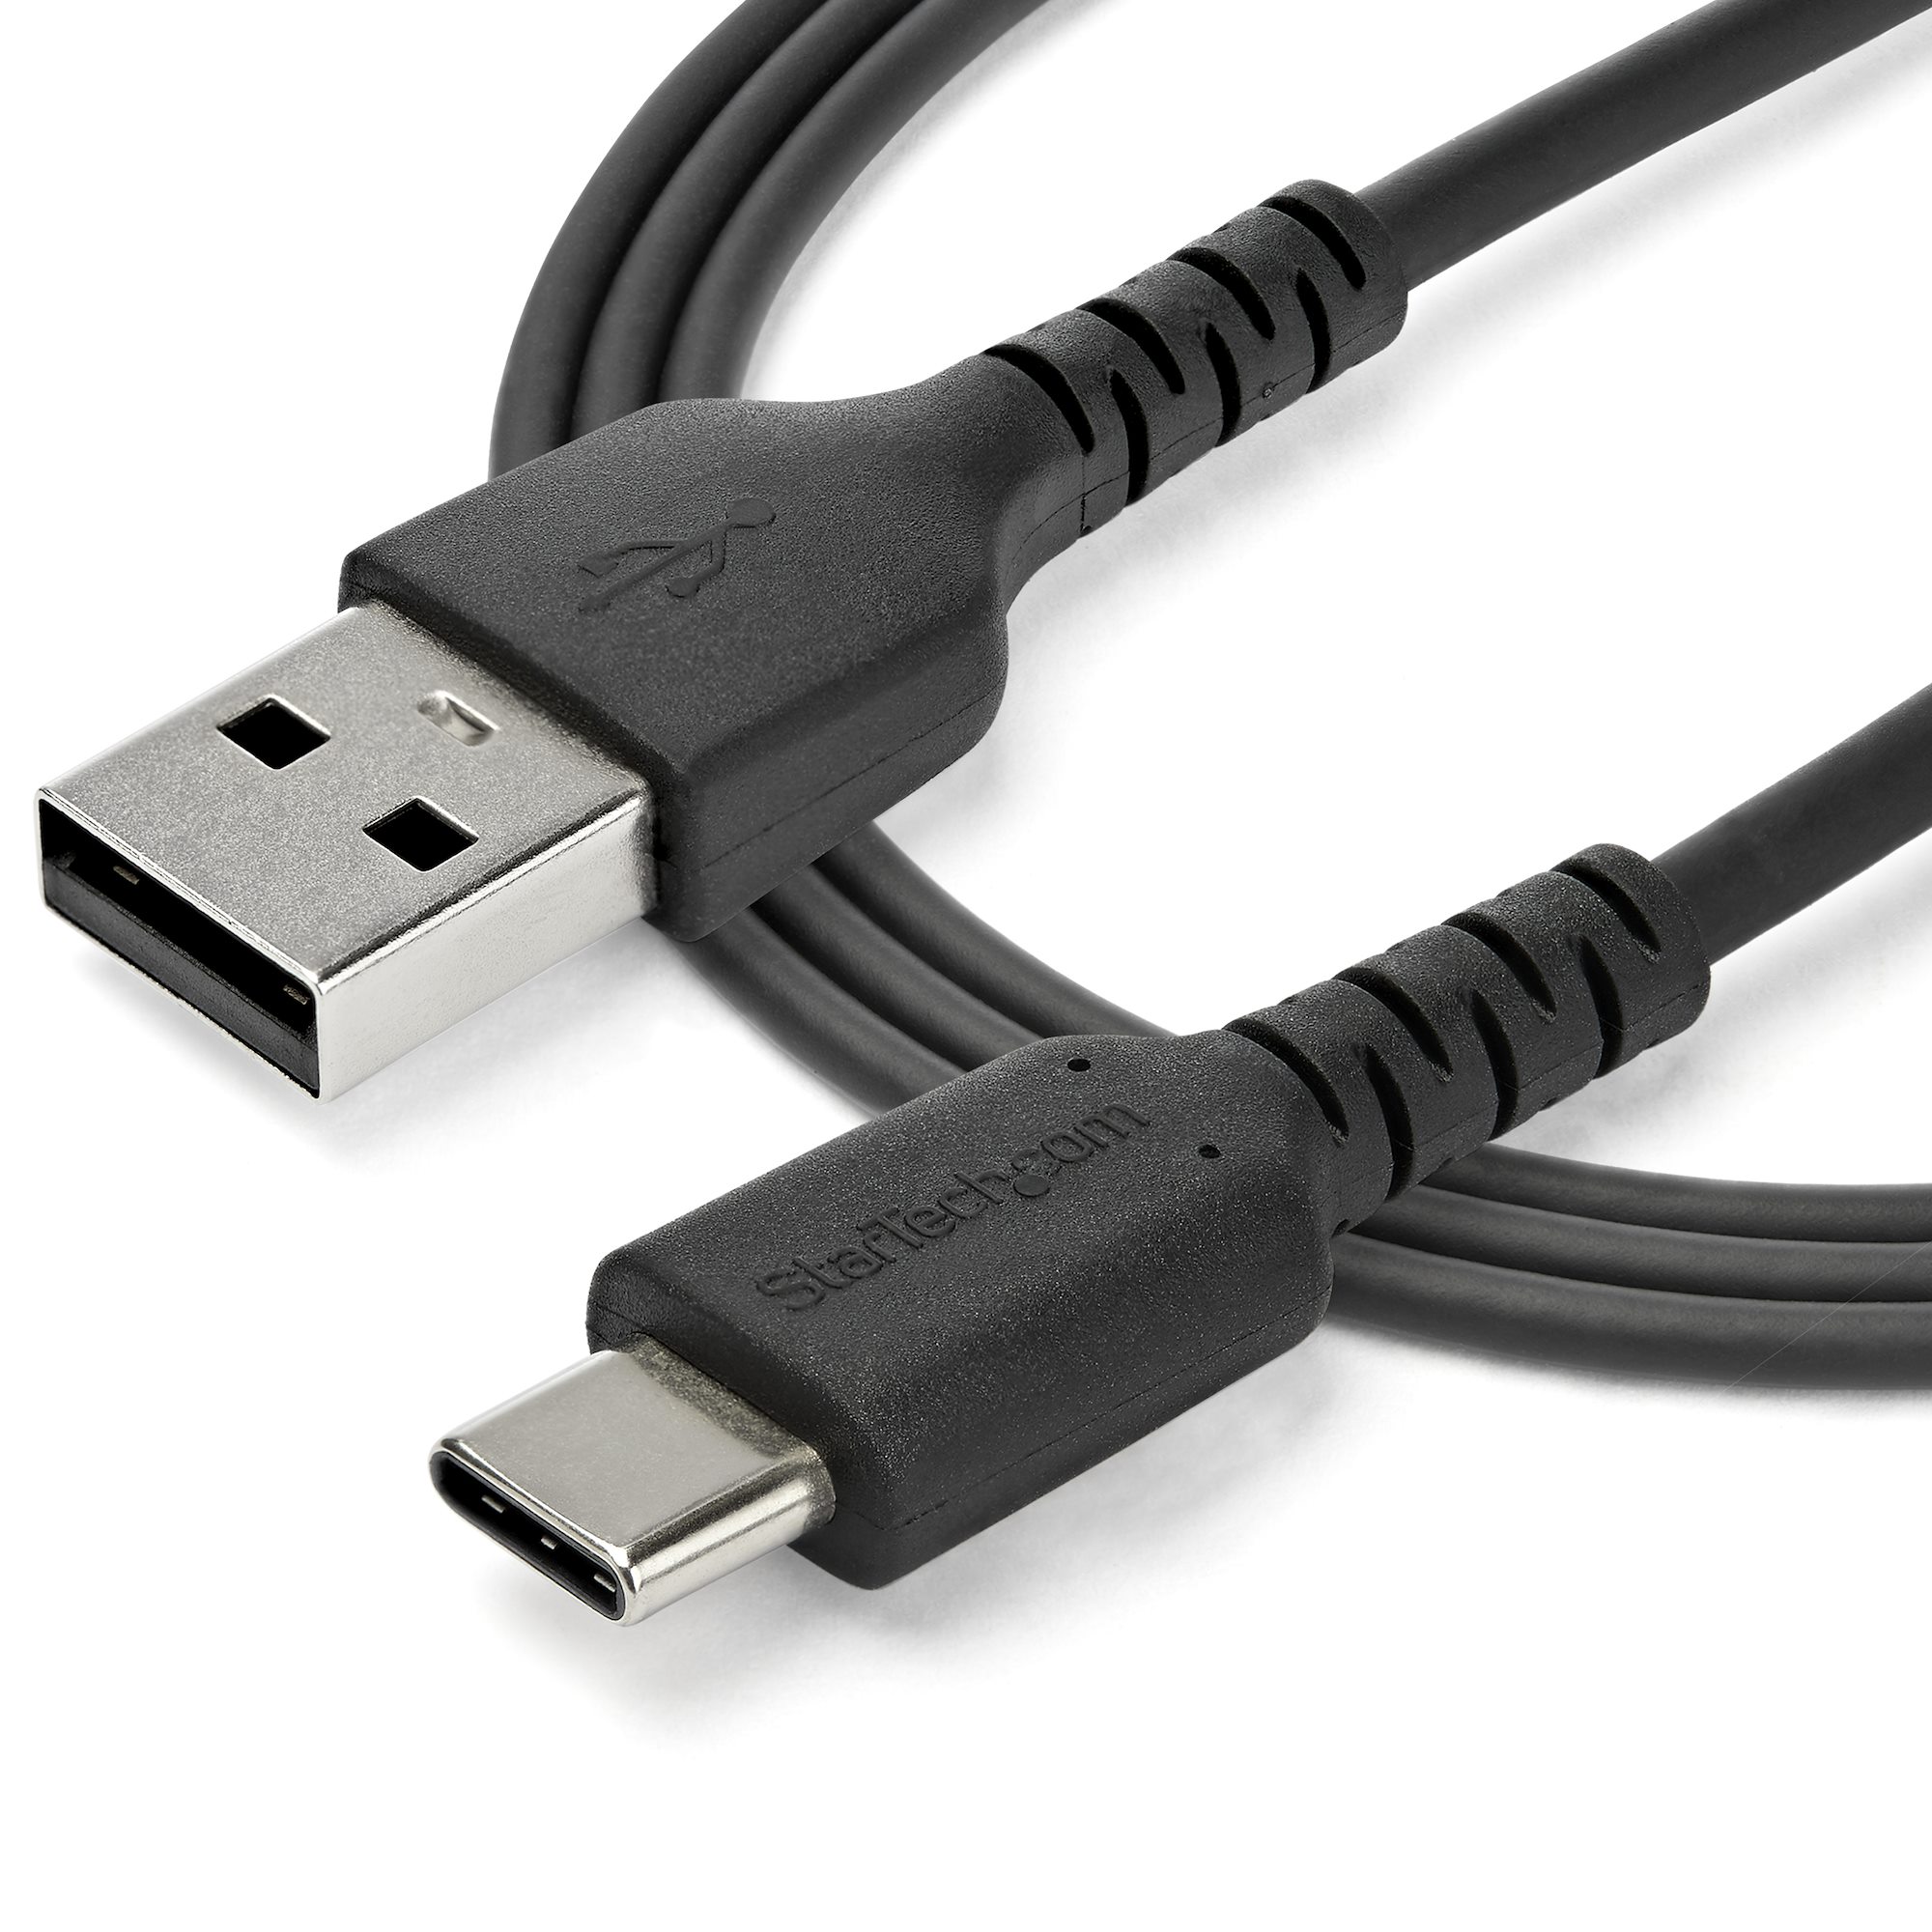 1m USB-A - USB-C ケーブル USB 2.0準拠 ブラック - USB-Cケーブル | StarTech.com 日本